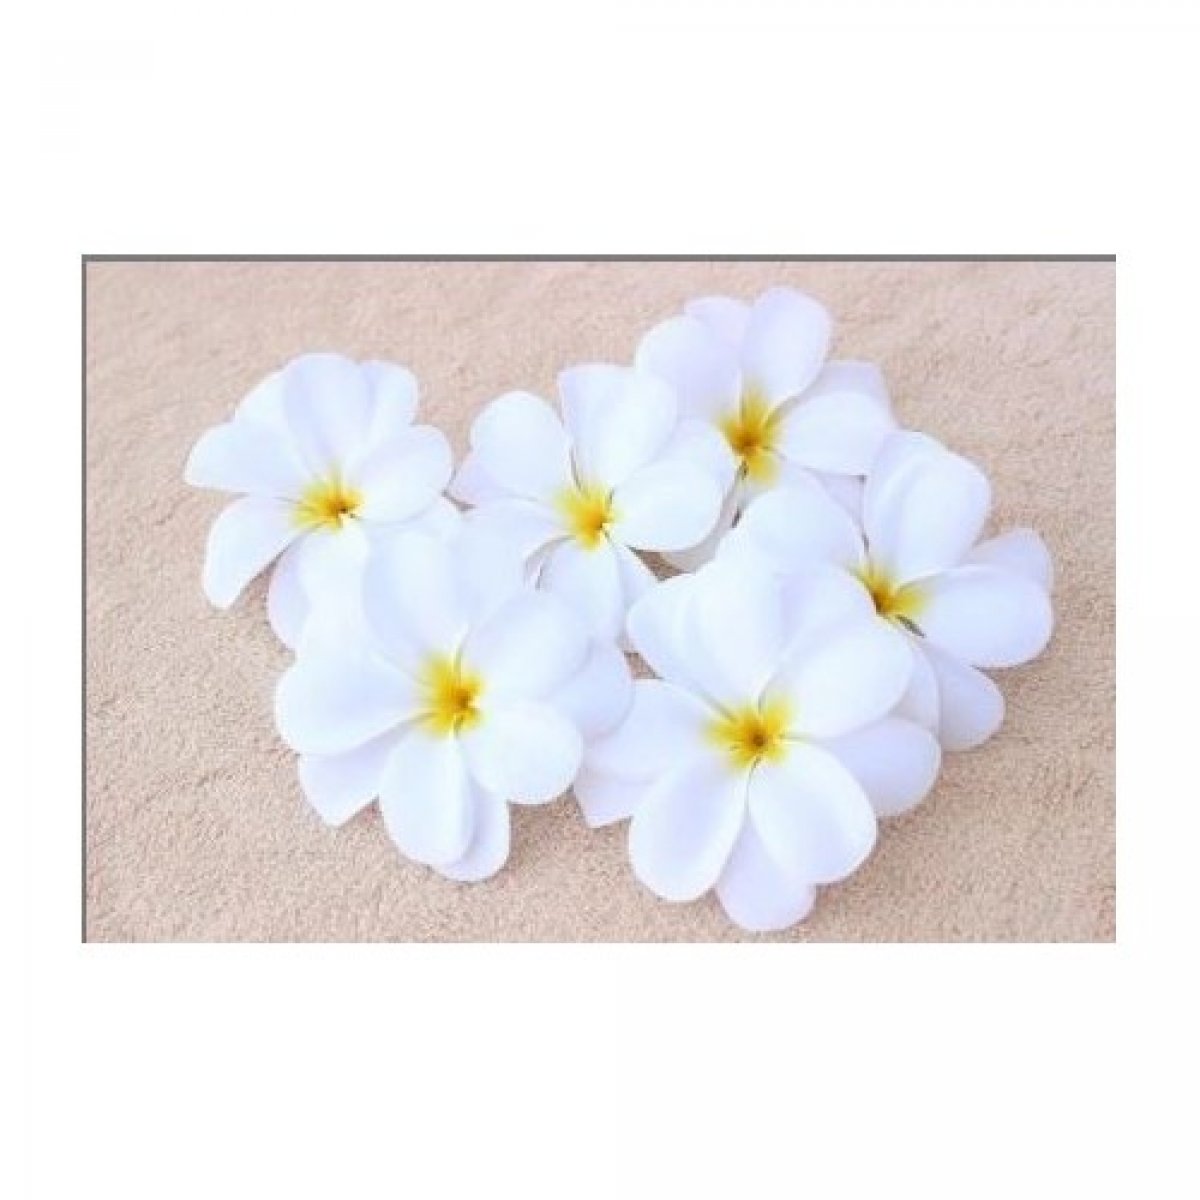 Tete de Fleur de Frangipanier blanc x 10 pièces